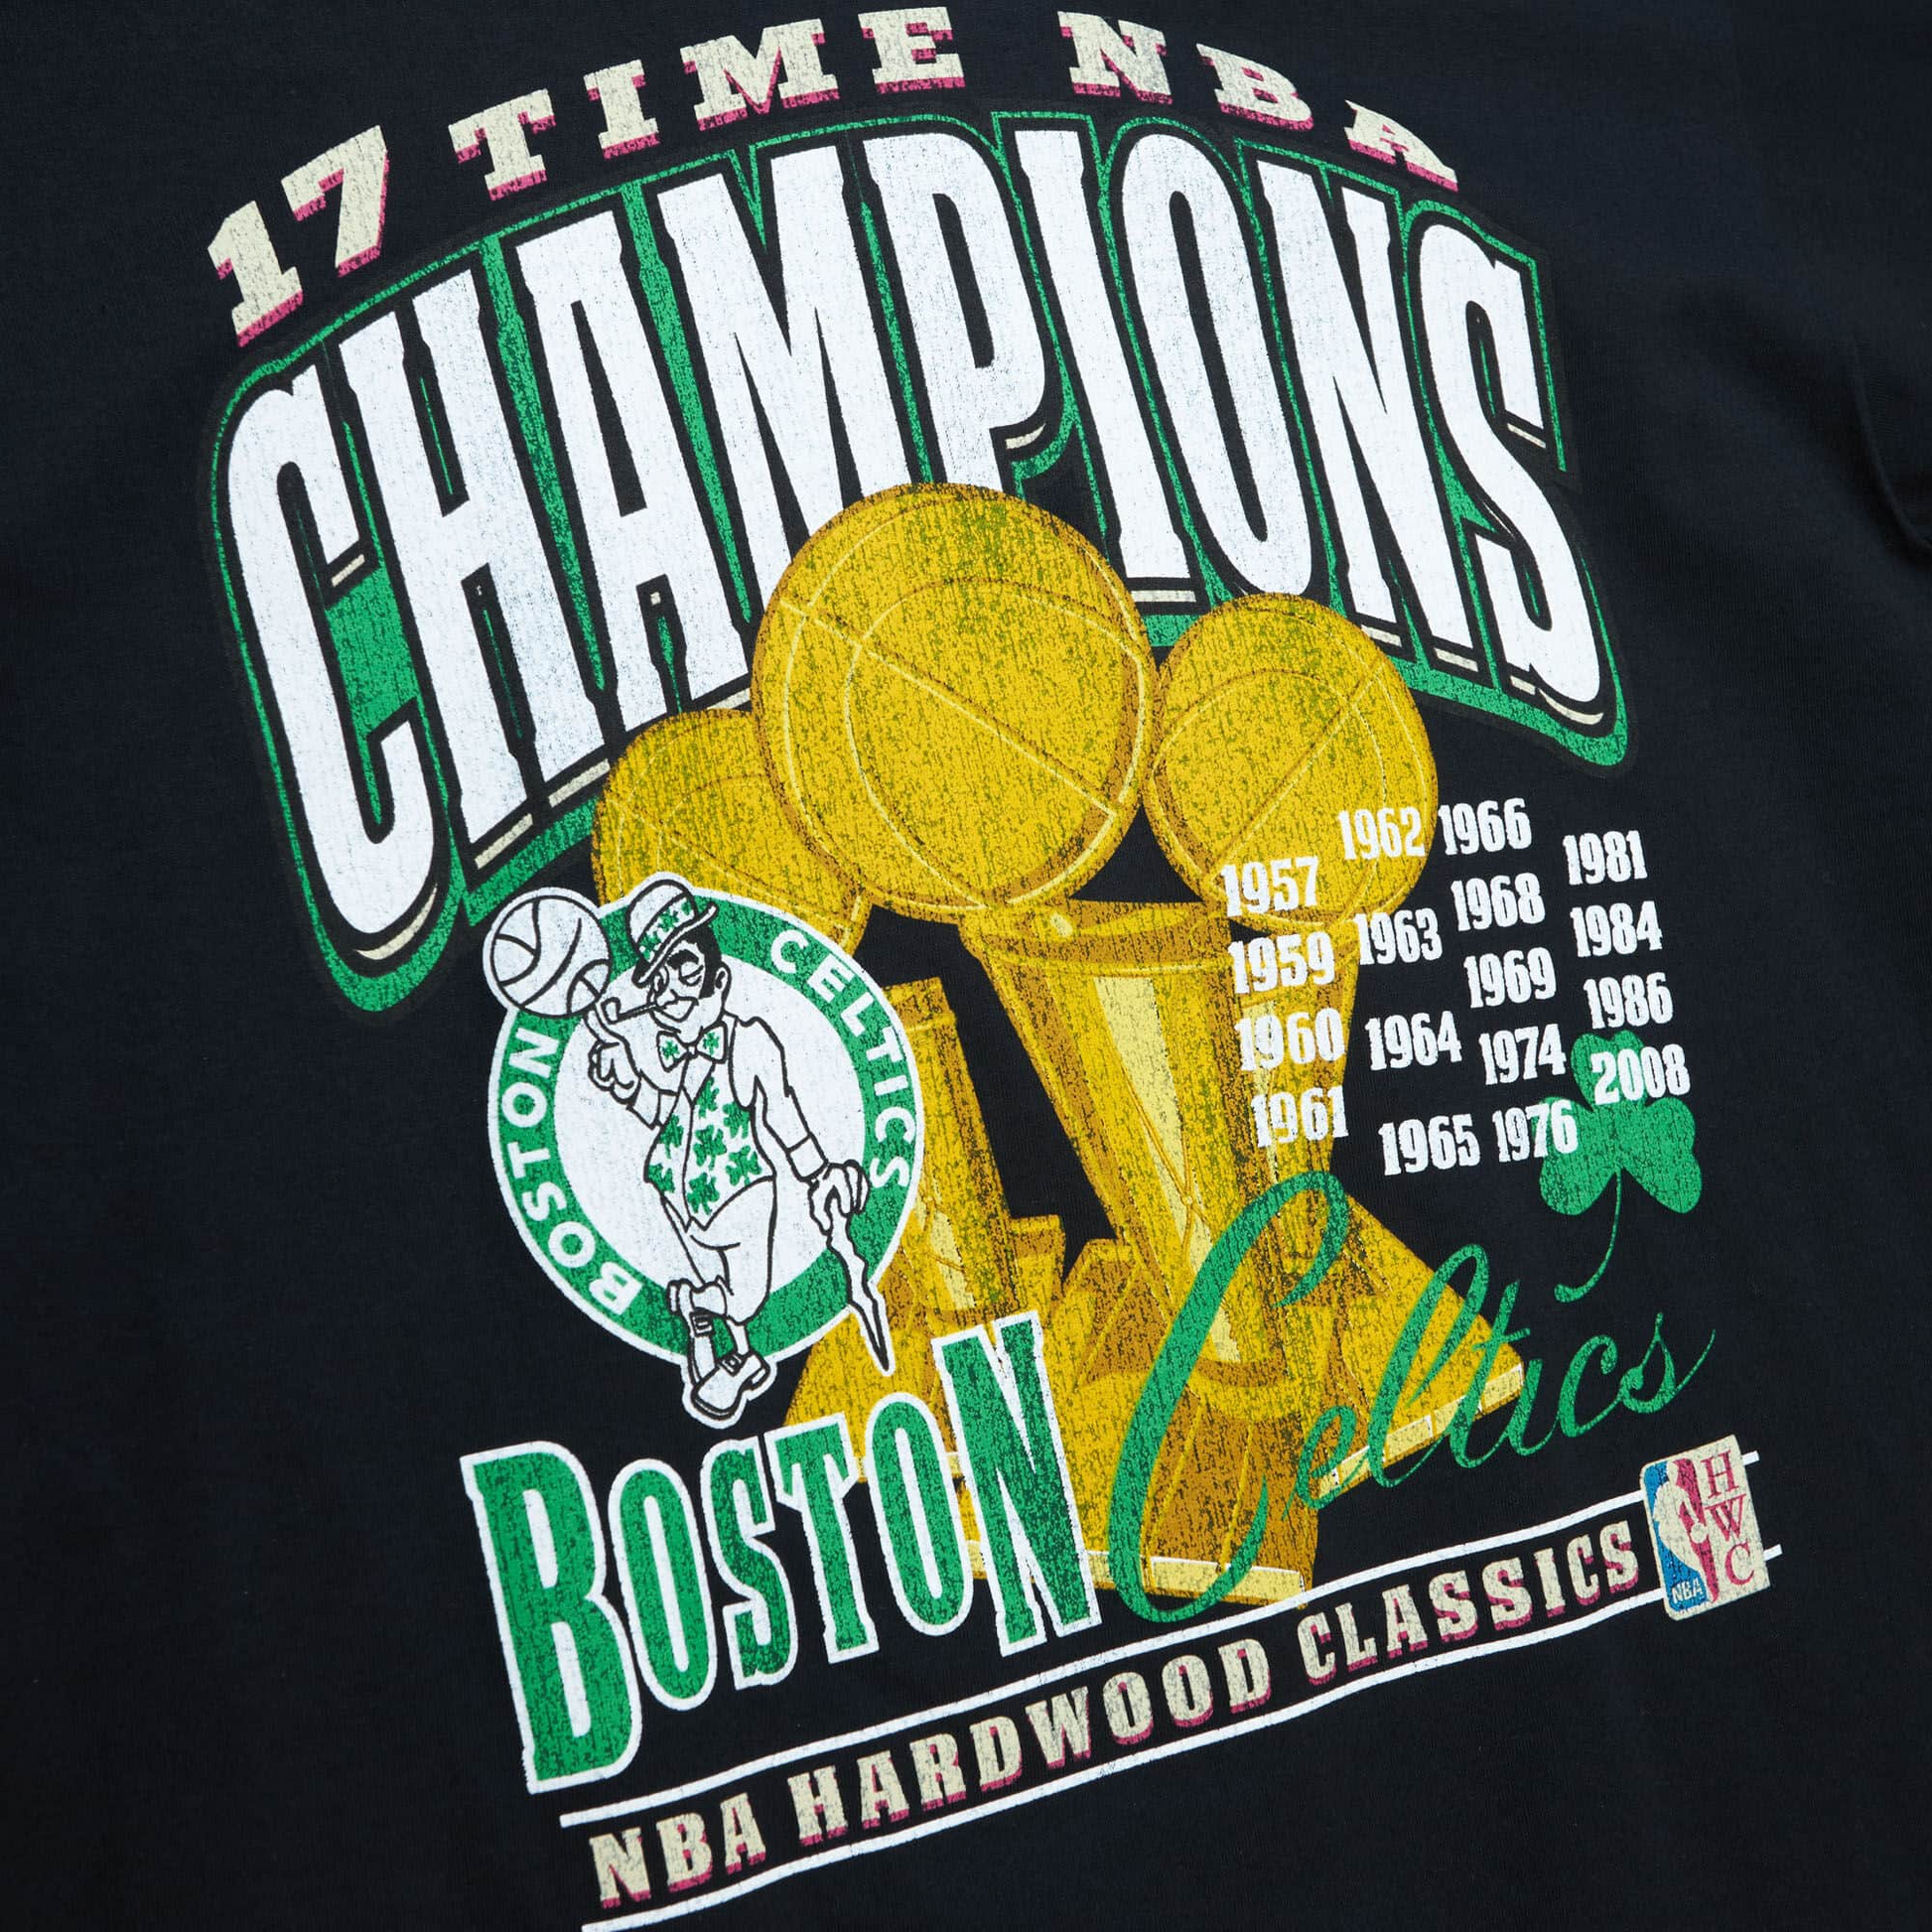 Boston Celtics Men's Fan Shop